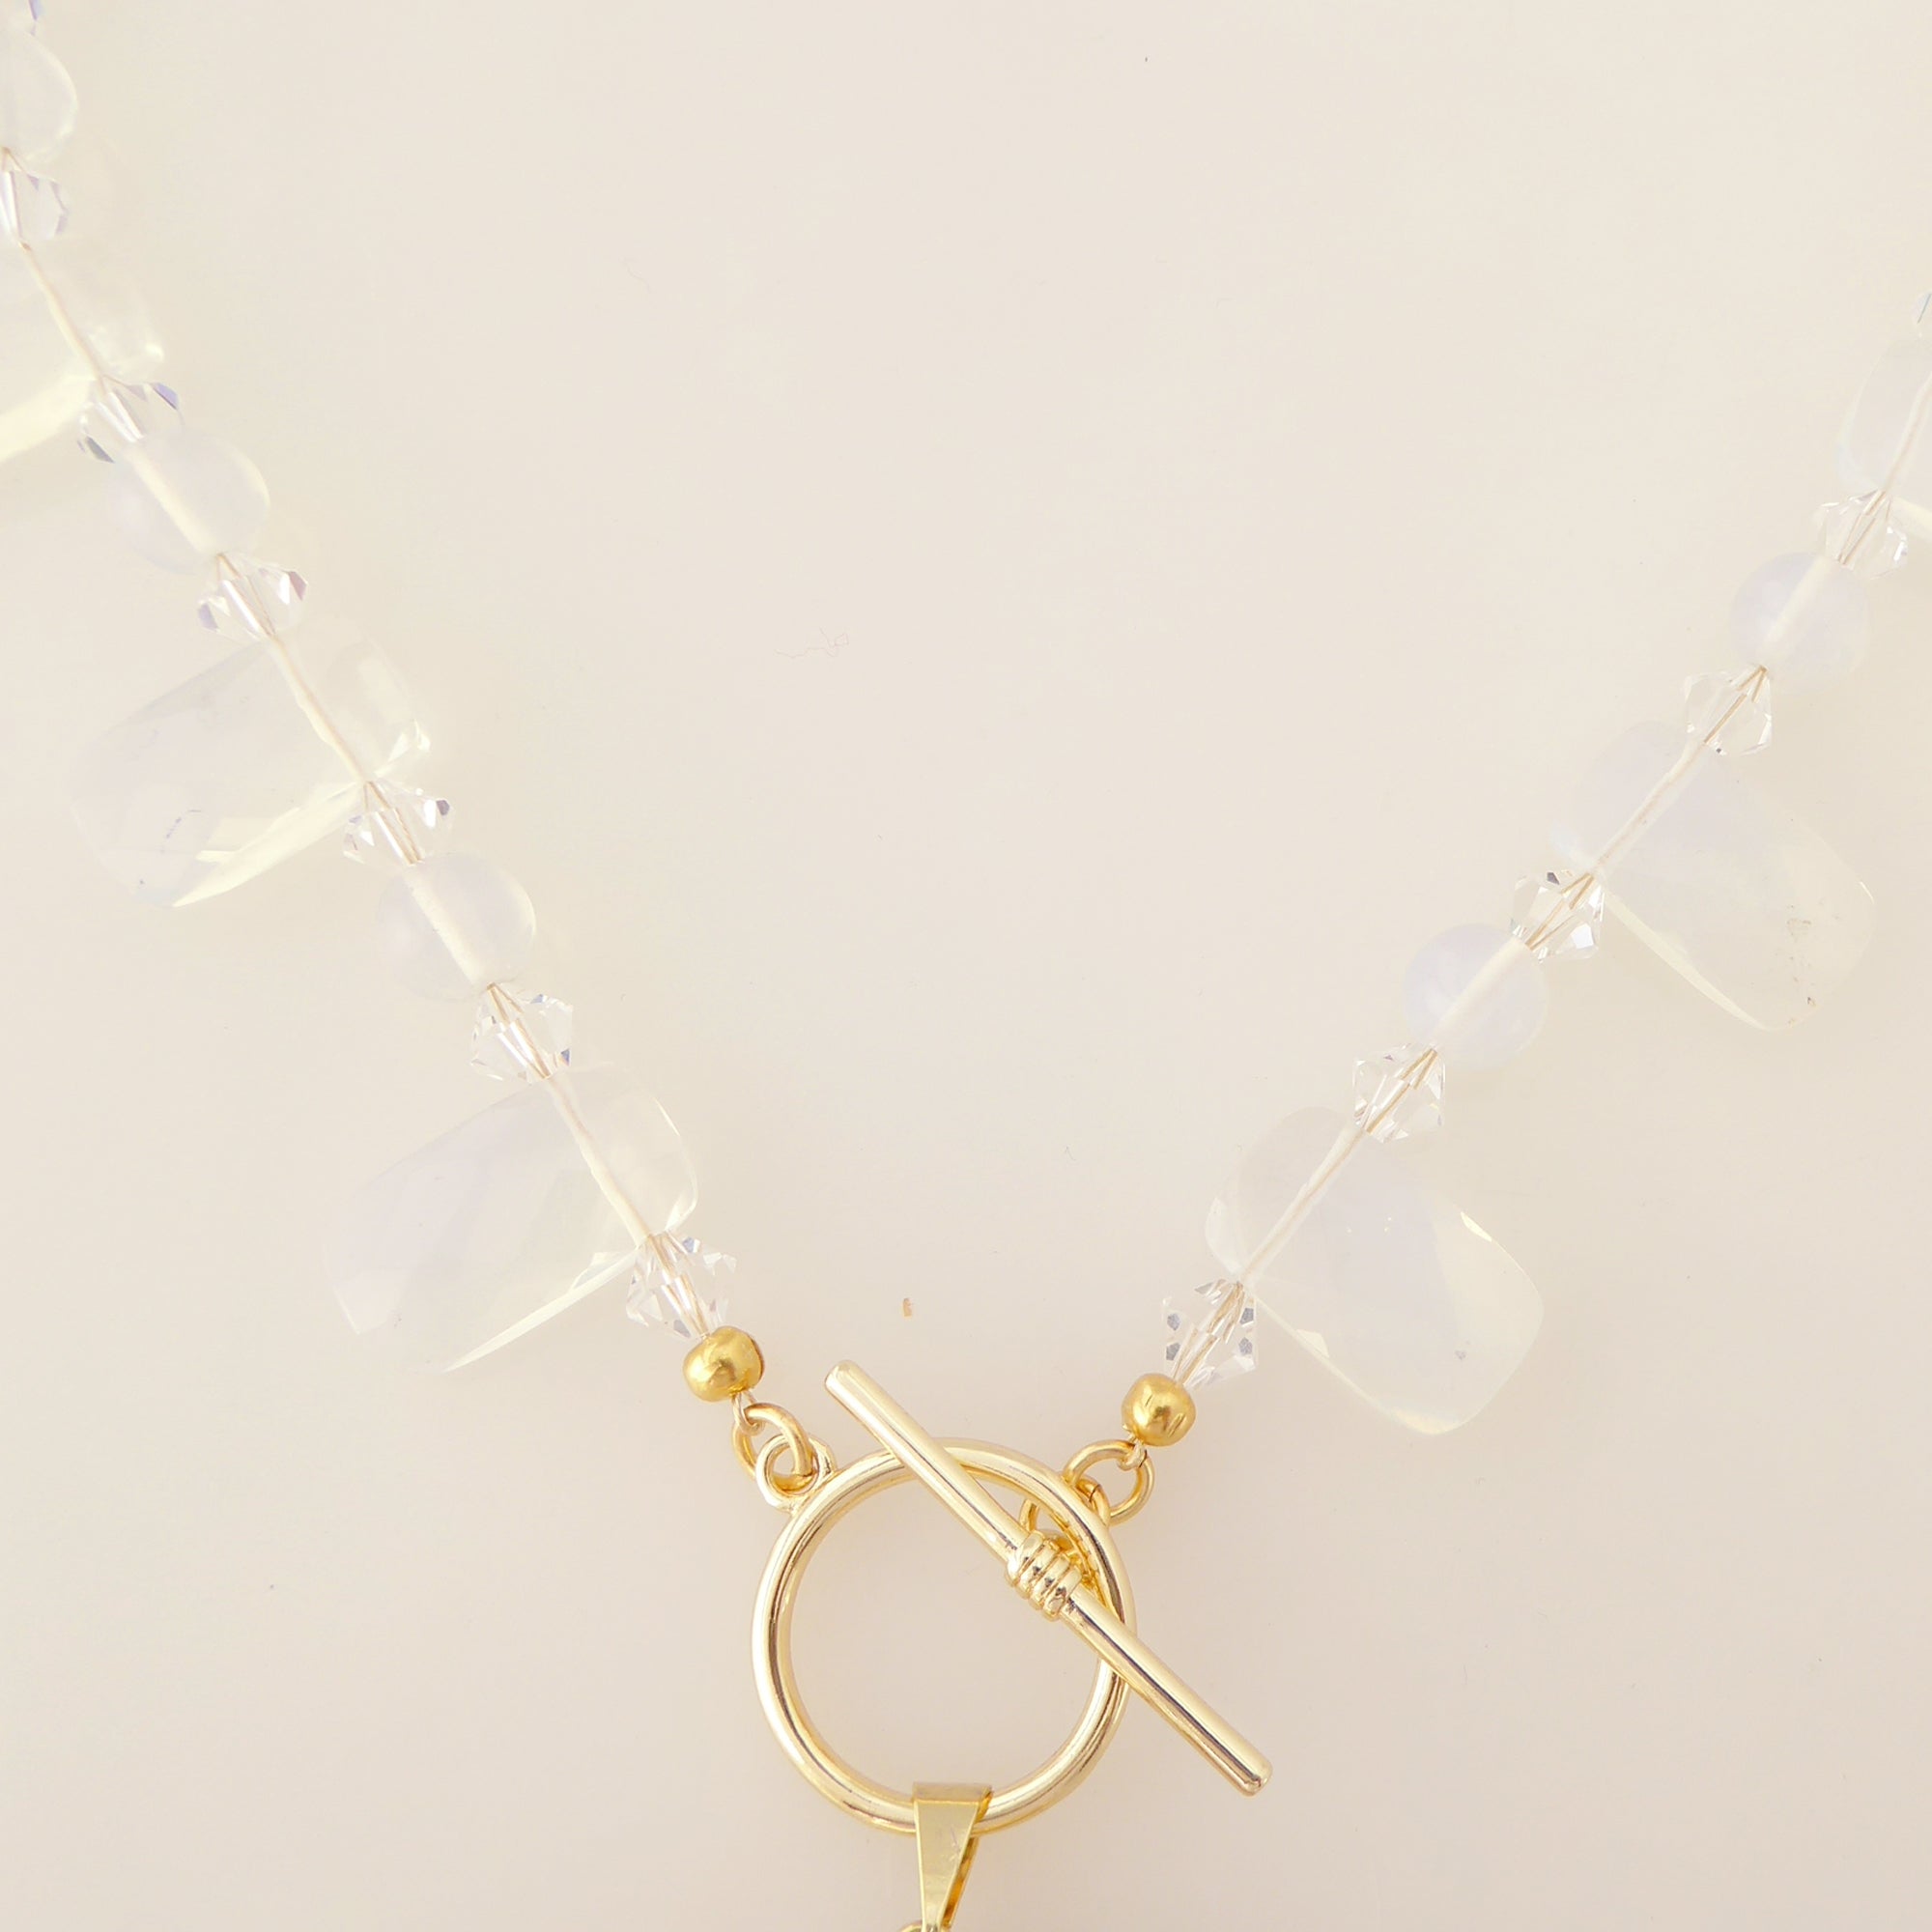    Dove gray agate slice necklace by Jenny Dayco 4